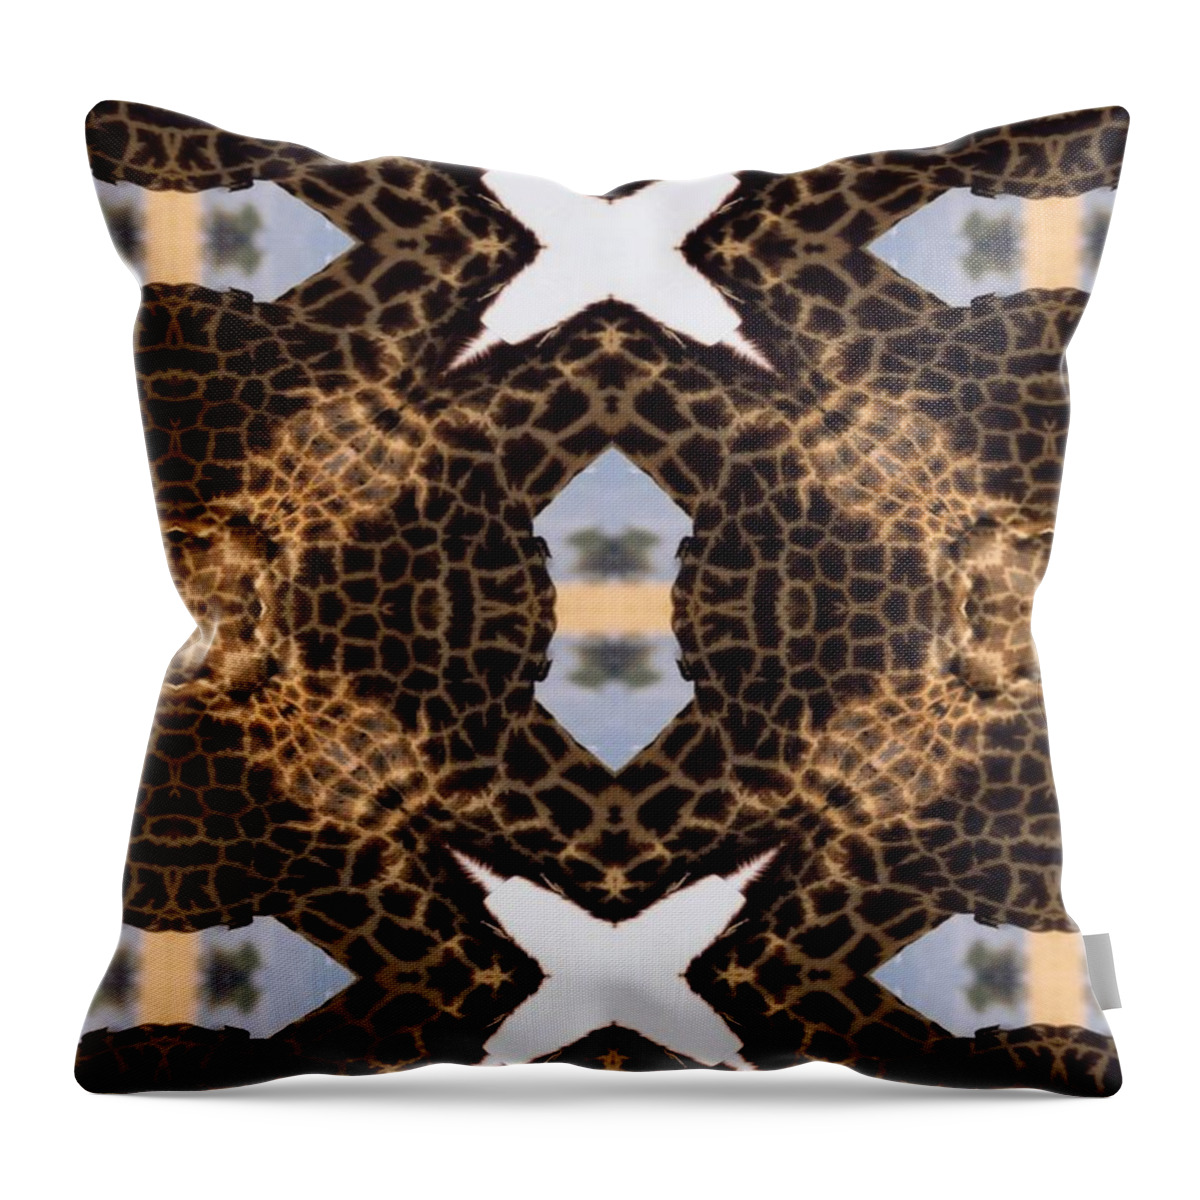 Digital Throw Pillow featuring the digital art Giraffe I by Maria Watt